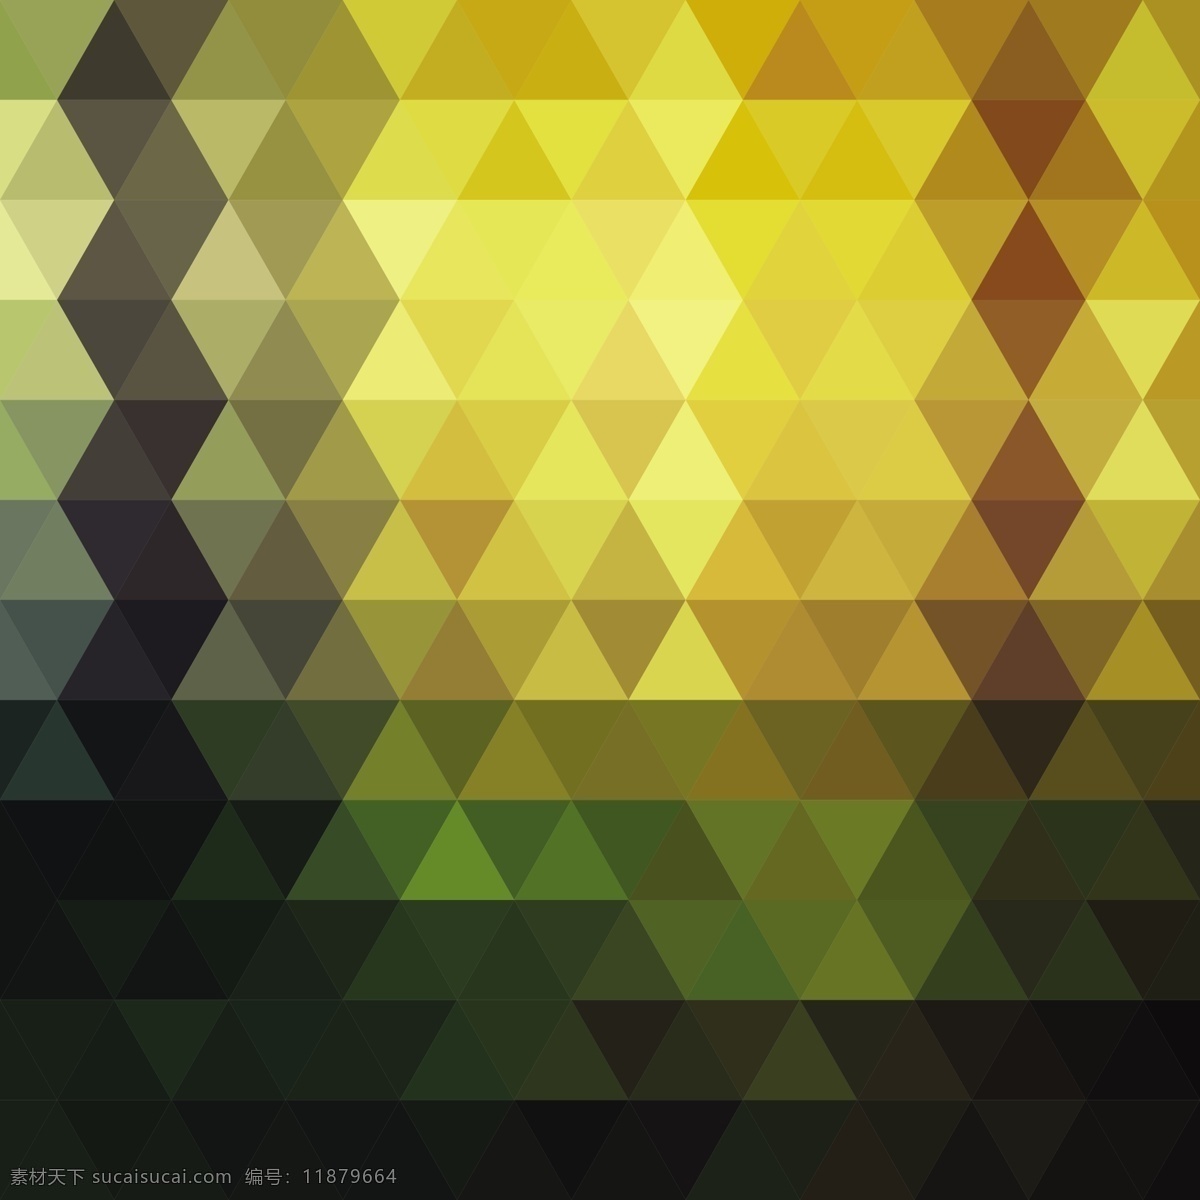 黄色 色调 多边形 背景 三角形 颜色 壁纸 三角形背景 彩色背景 黄色背景 彩色